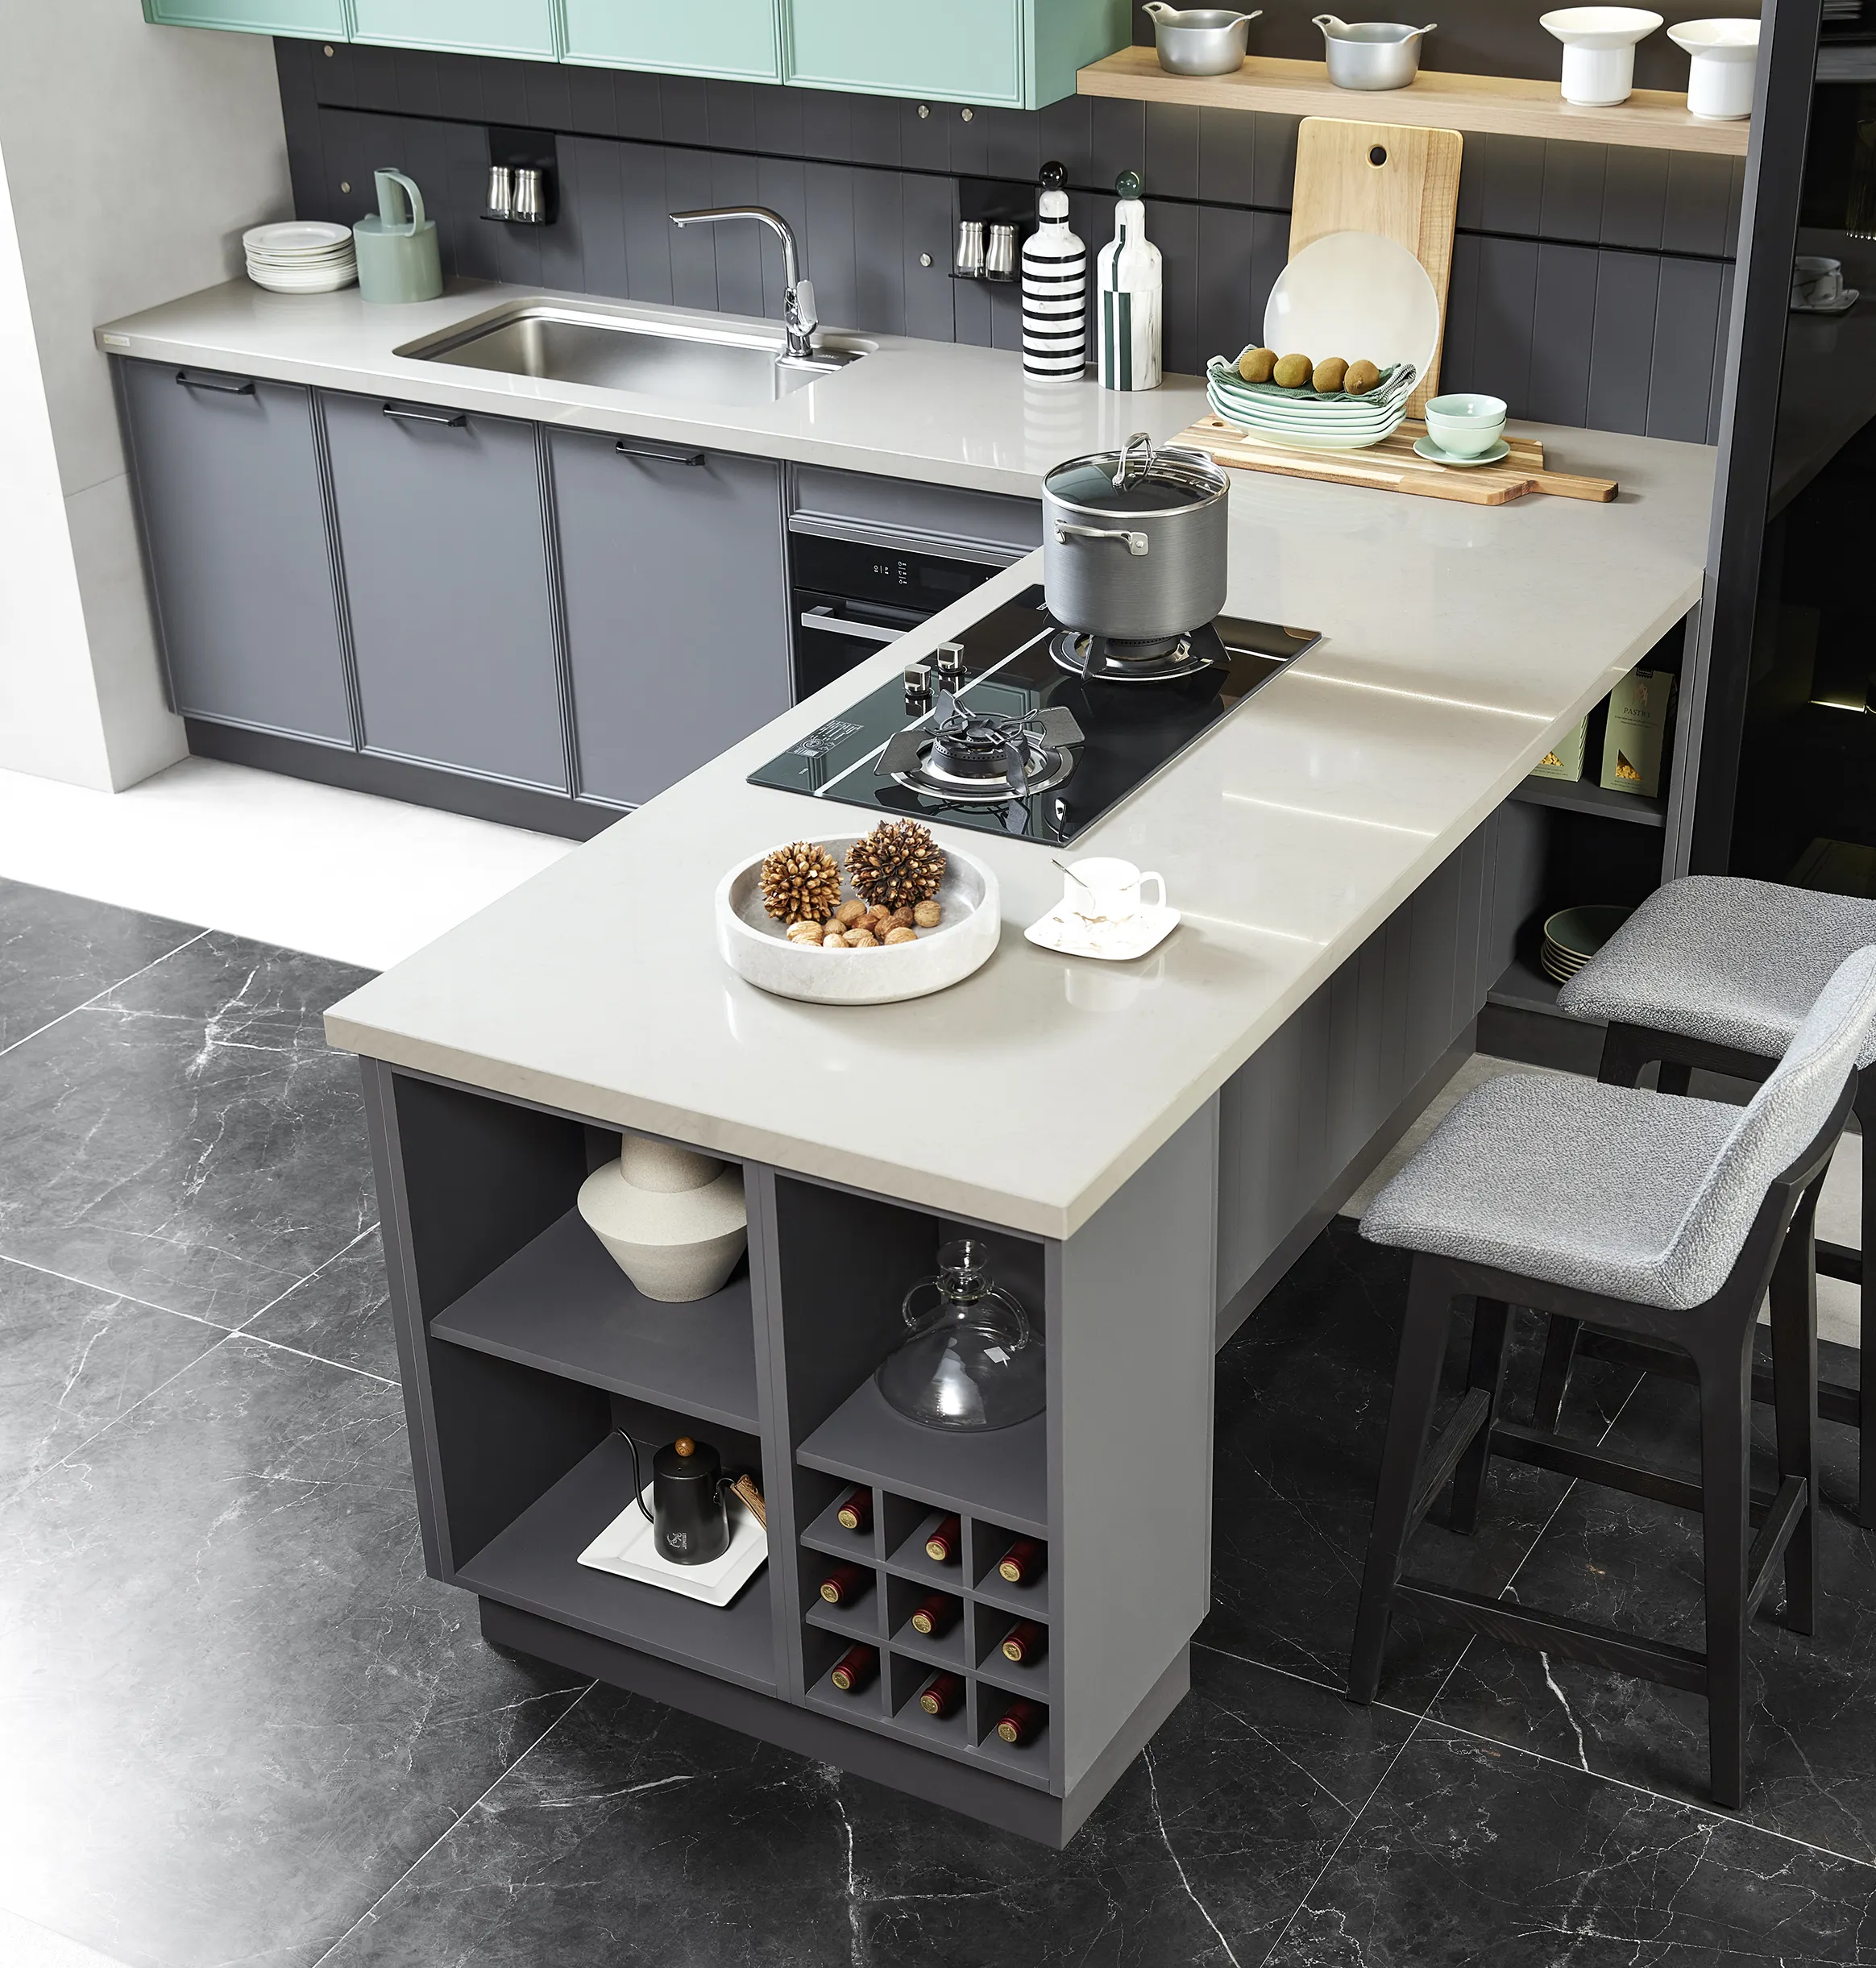 Rangement pour la maison de luxe haut de gamme meubles complets en bois armoire de cuisine modulaire au design moderne en bois massif personnalisée